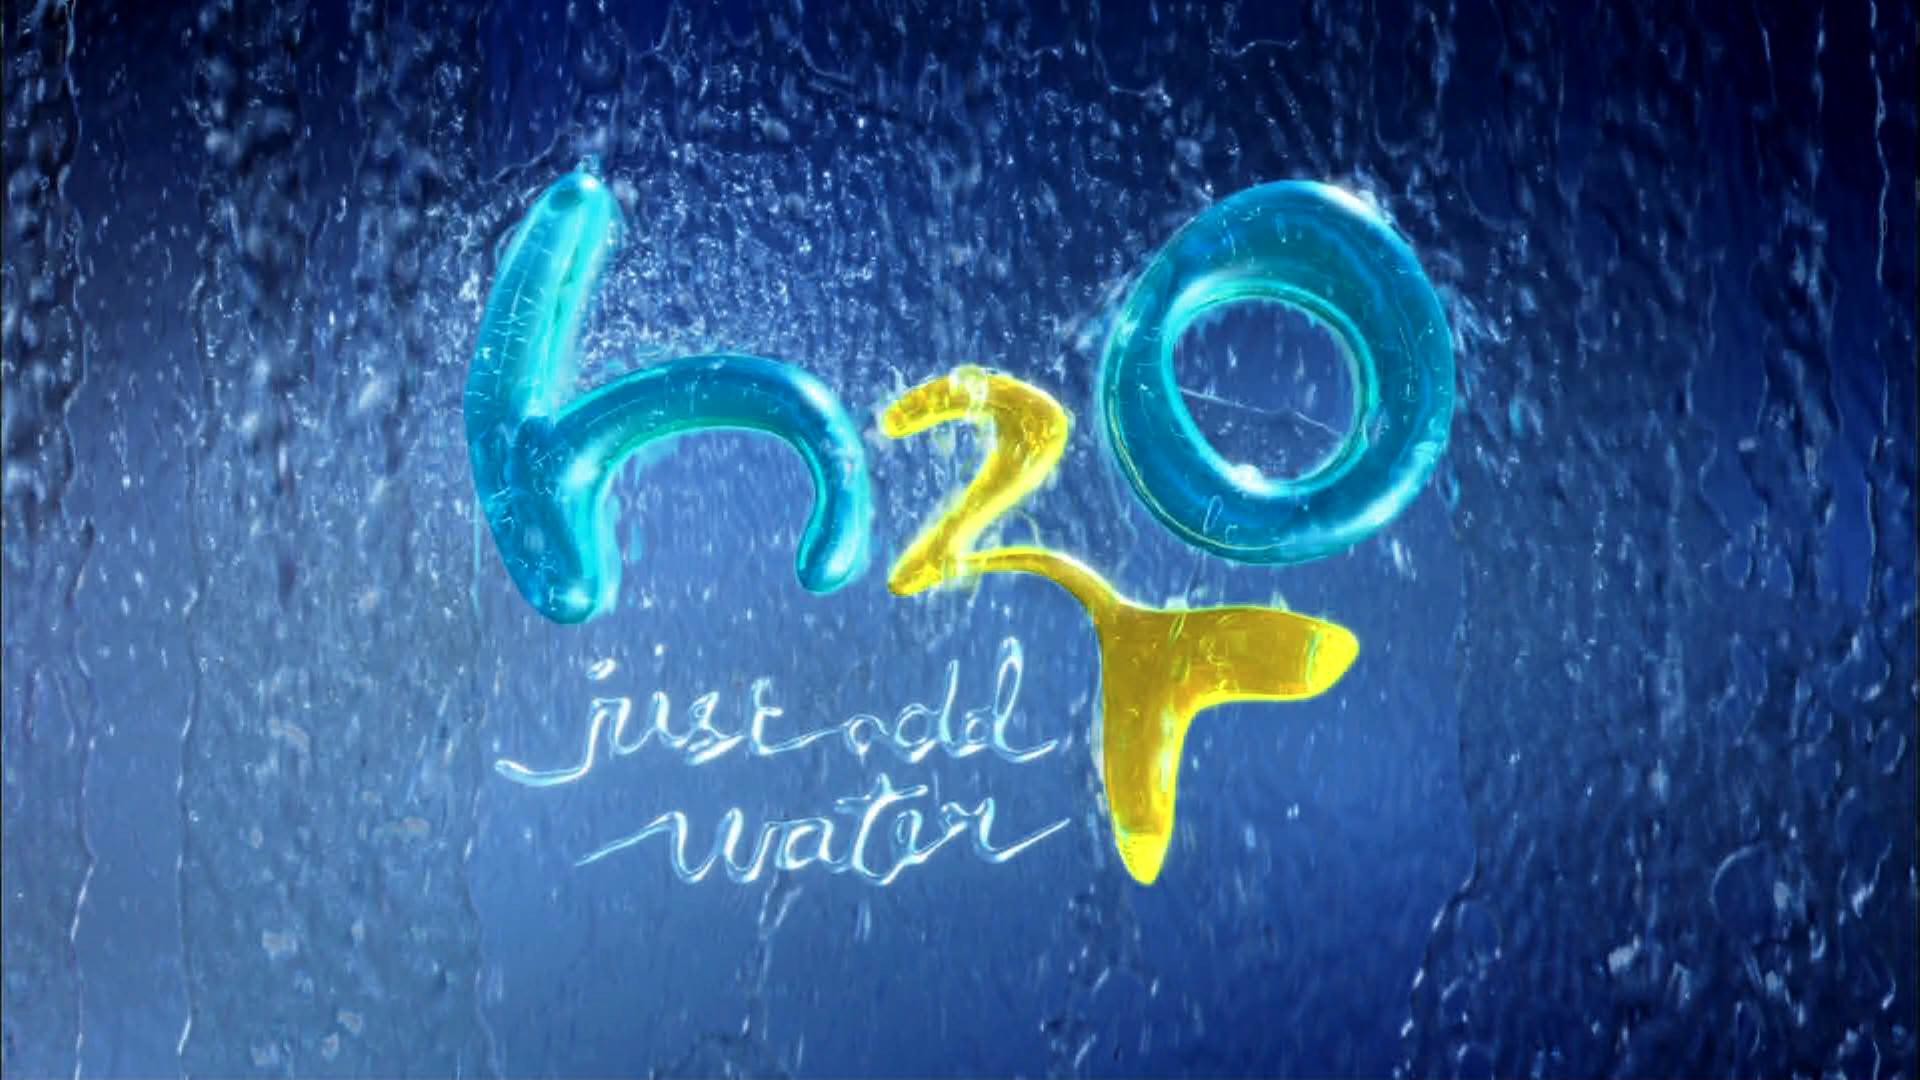 Rb2o h2o. Аш 2 о 2. H2o просто Добавь воды надпись. Н2о просто Добавь воды логотип.